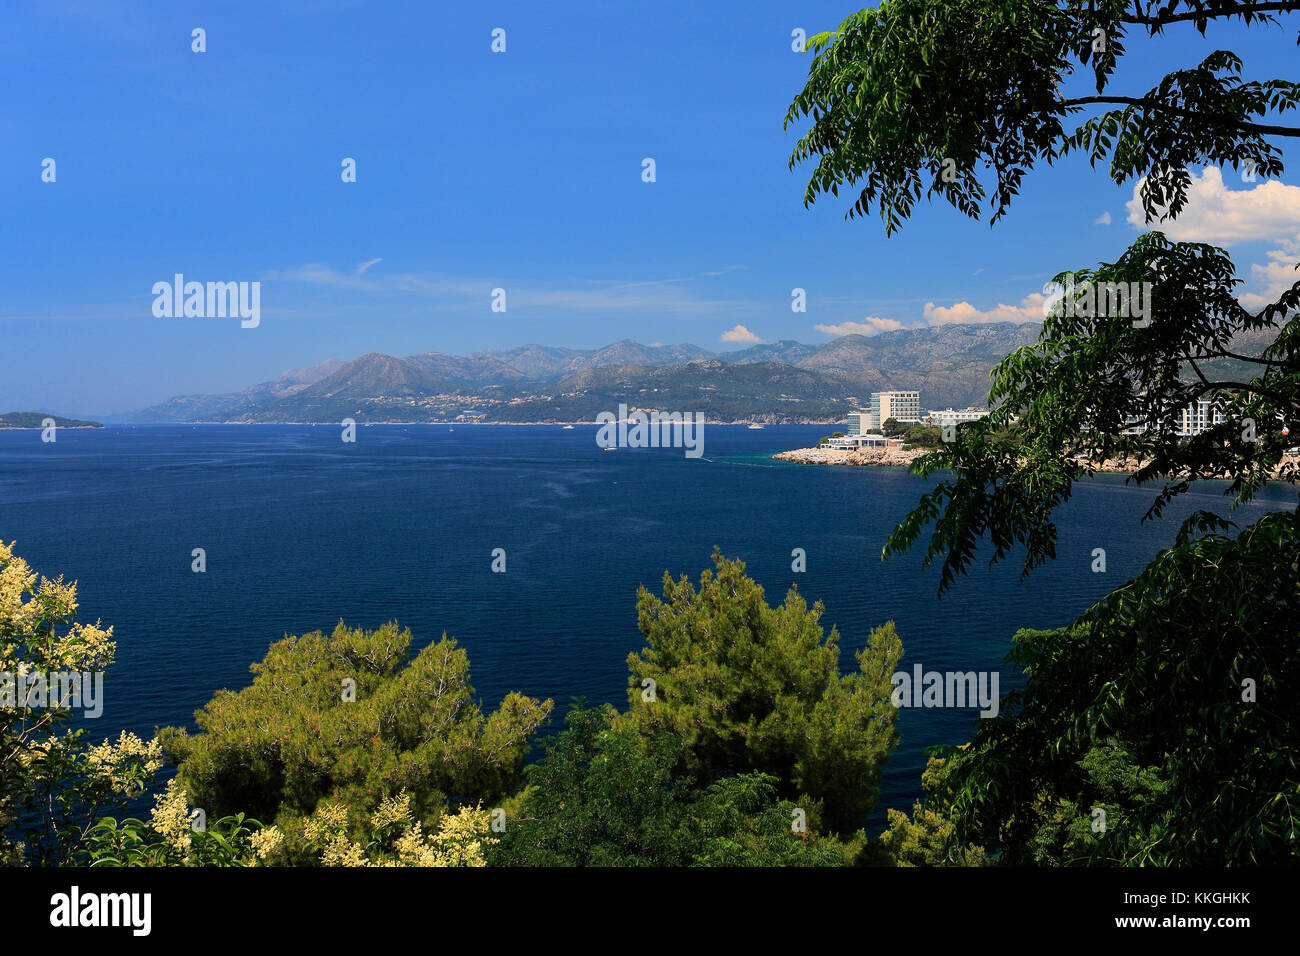 Verano vista sobre la playa de la bahía de Lapad, Lapad, Dubrovnik, ciudad de la costa dálmata, Mar Adriático, Croacia, Europa. Foto de stock